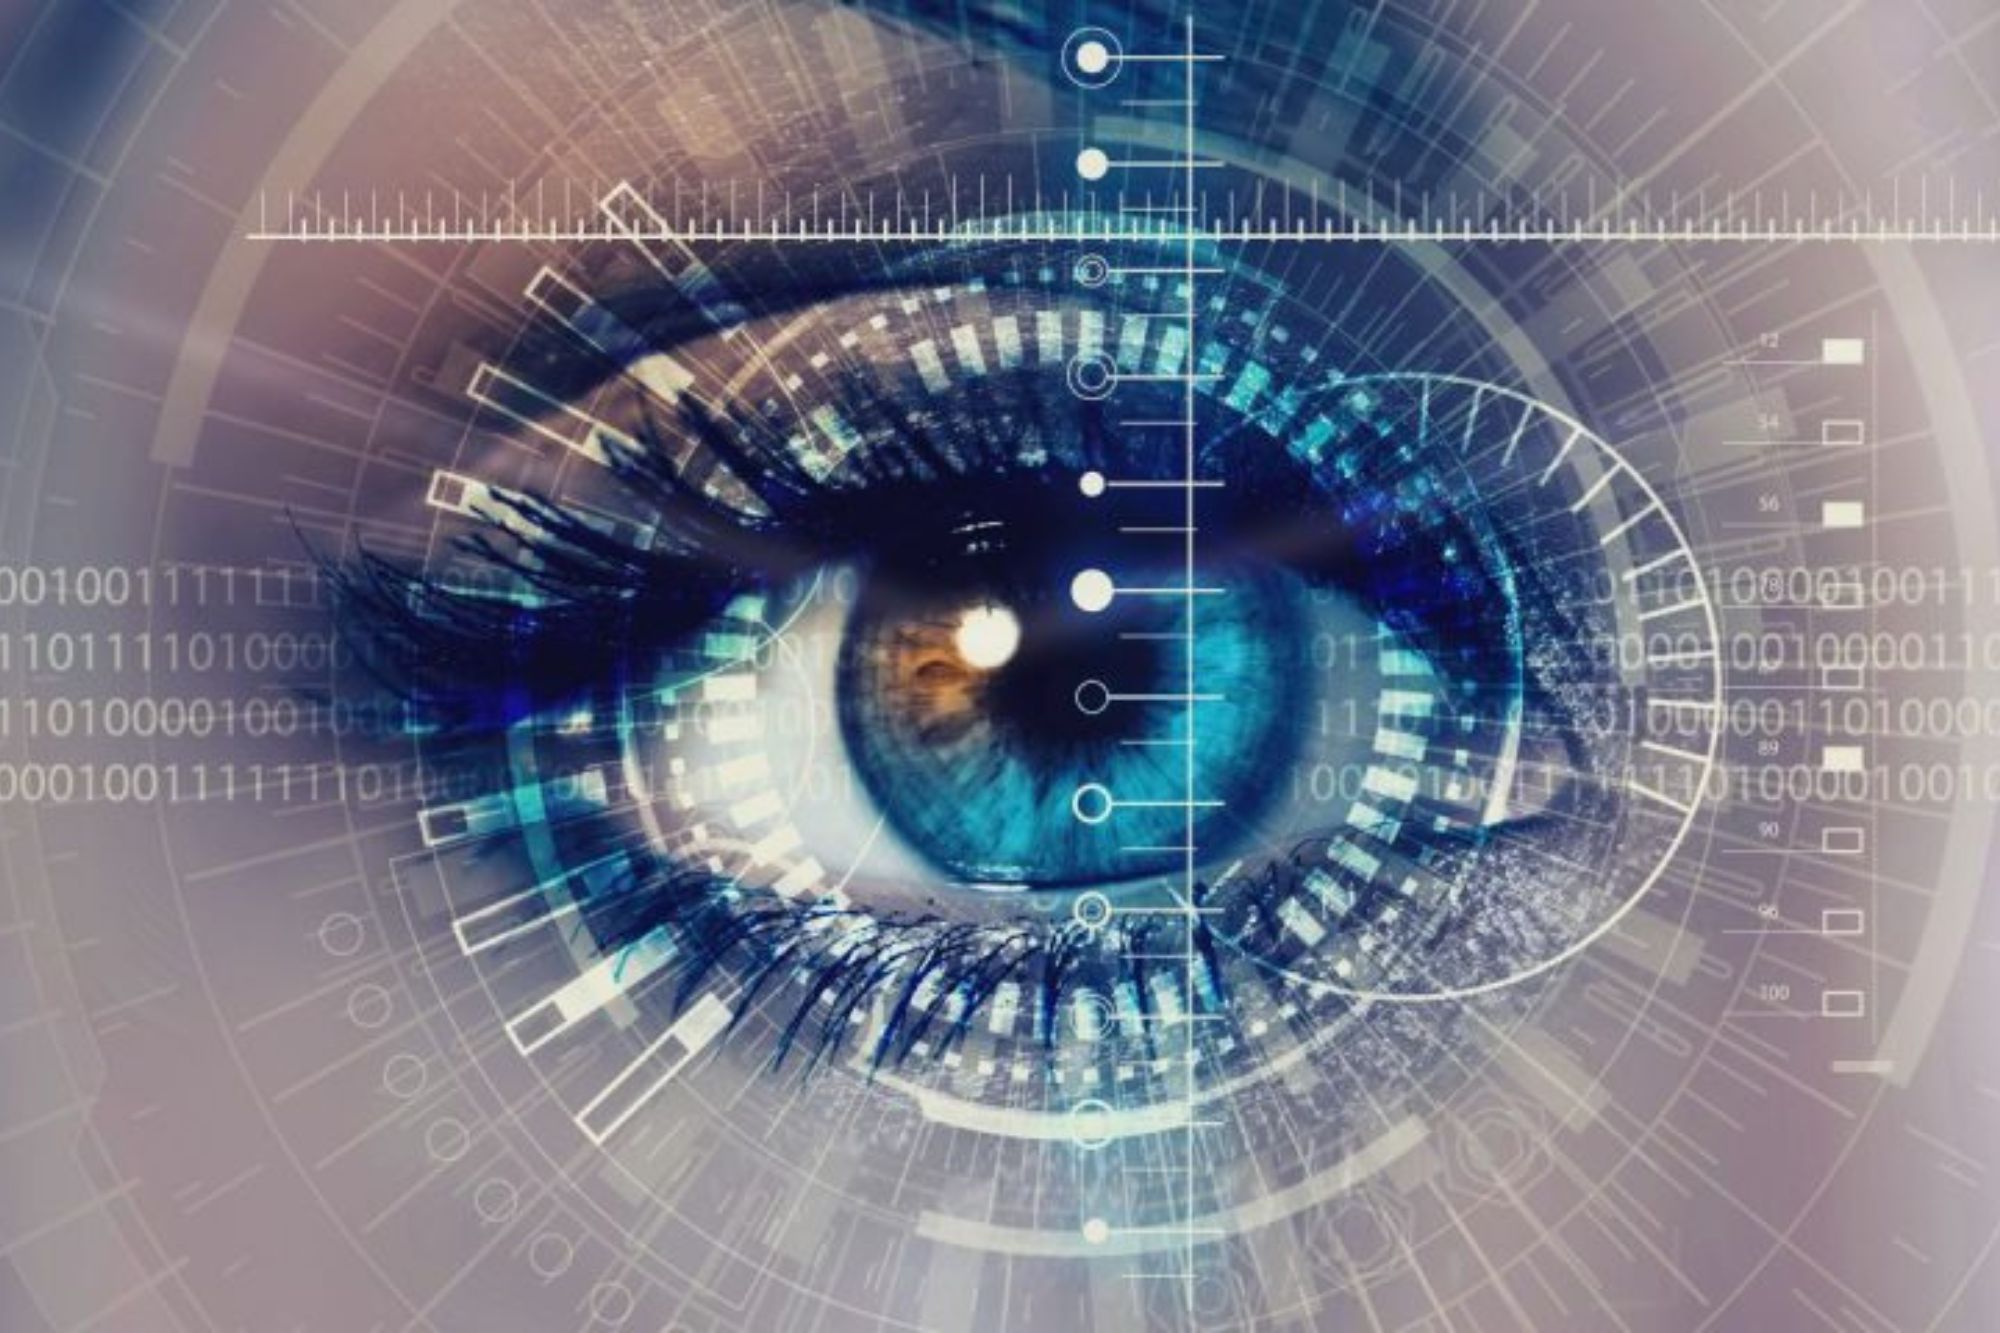 Scopri di più sull'articolo Forum della visione artificiale: ContactValue c’è!